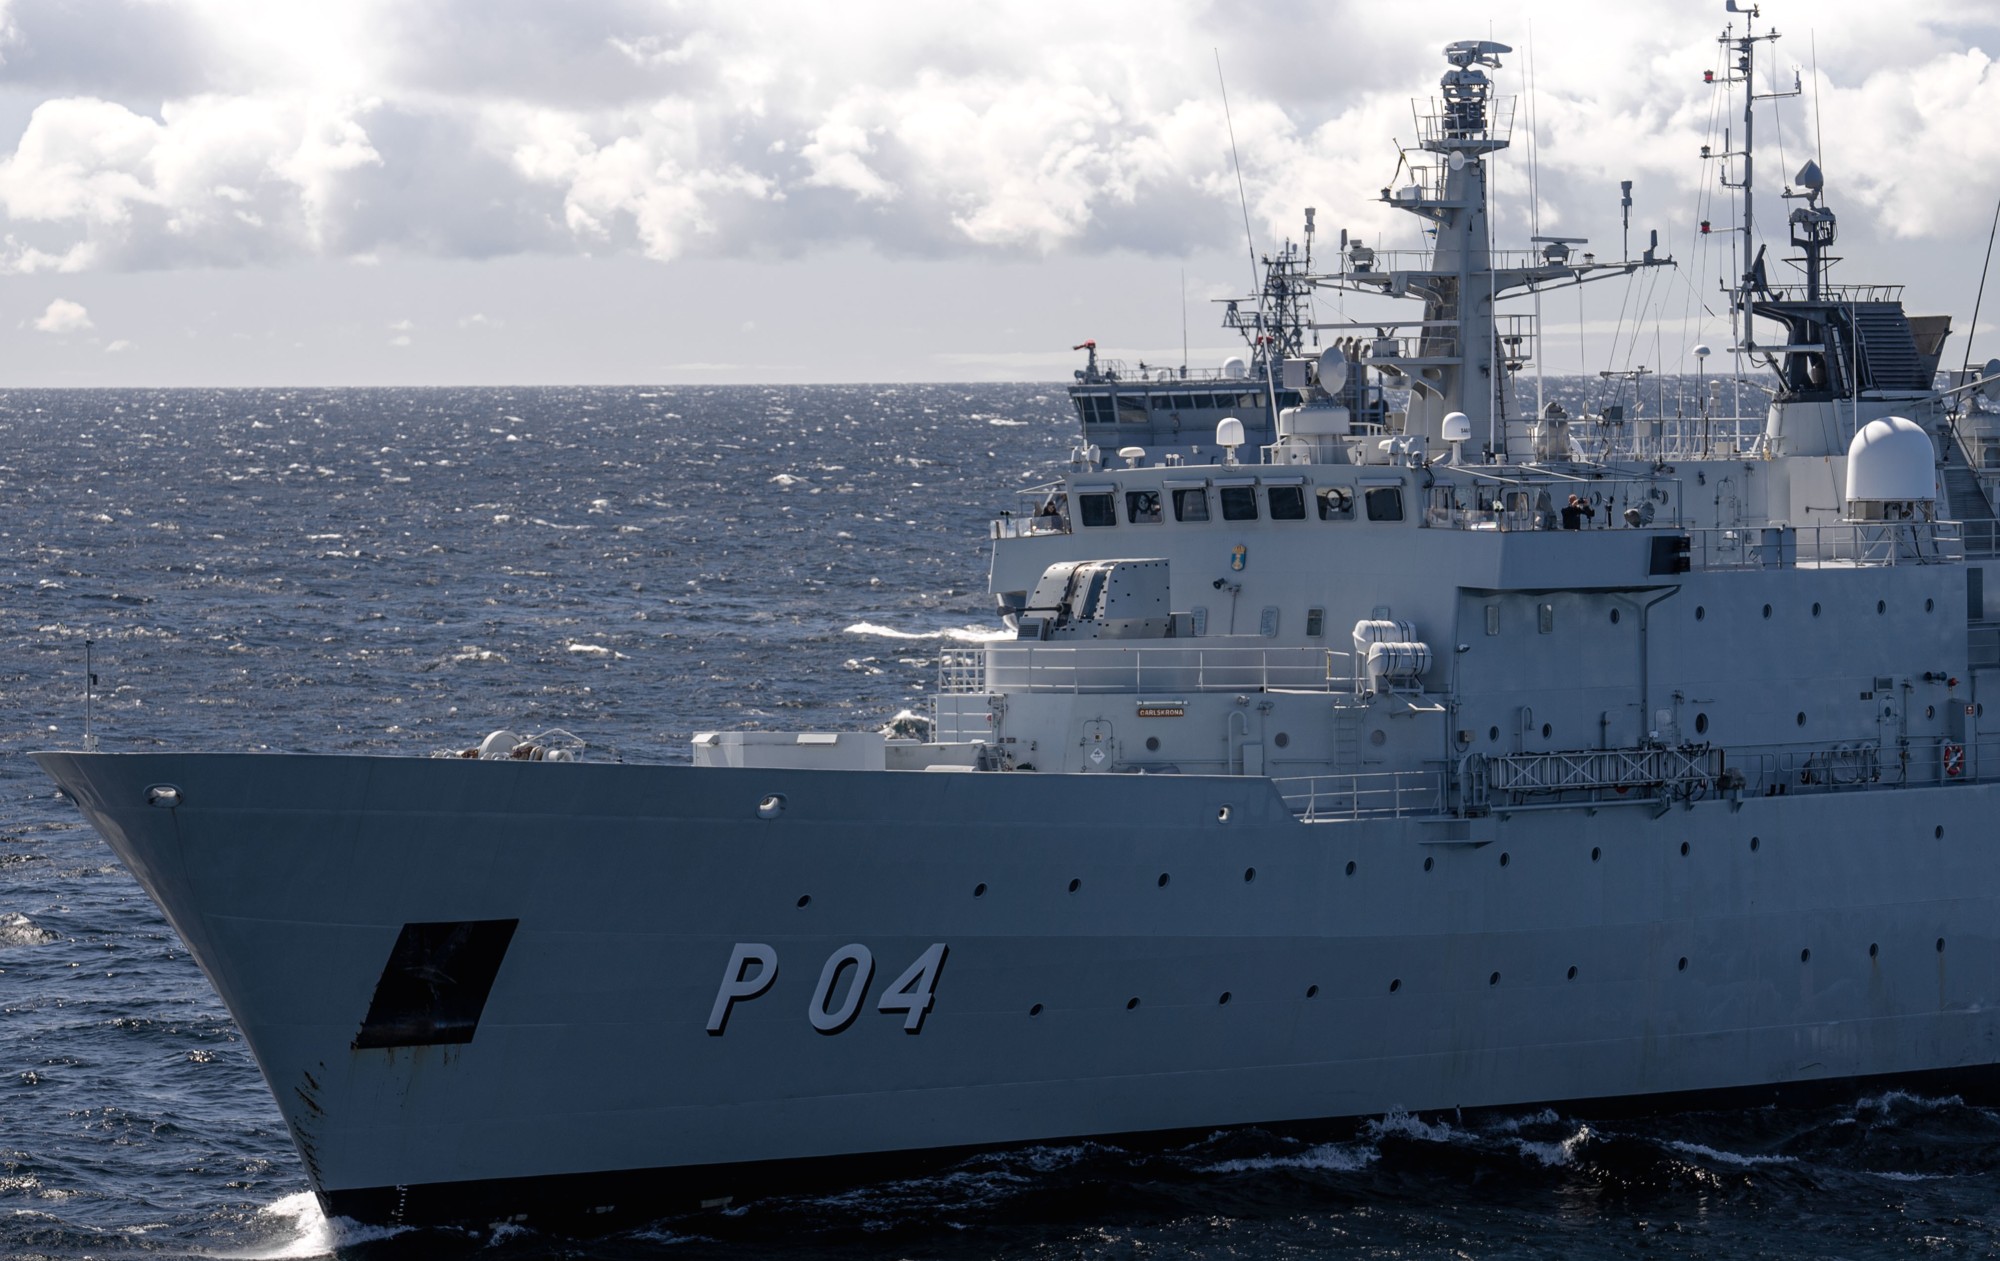 p04 hswms carlskrona hms ocean patrol vessel opv swedish navy svenska marinen försvarsmakten 10